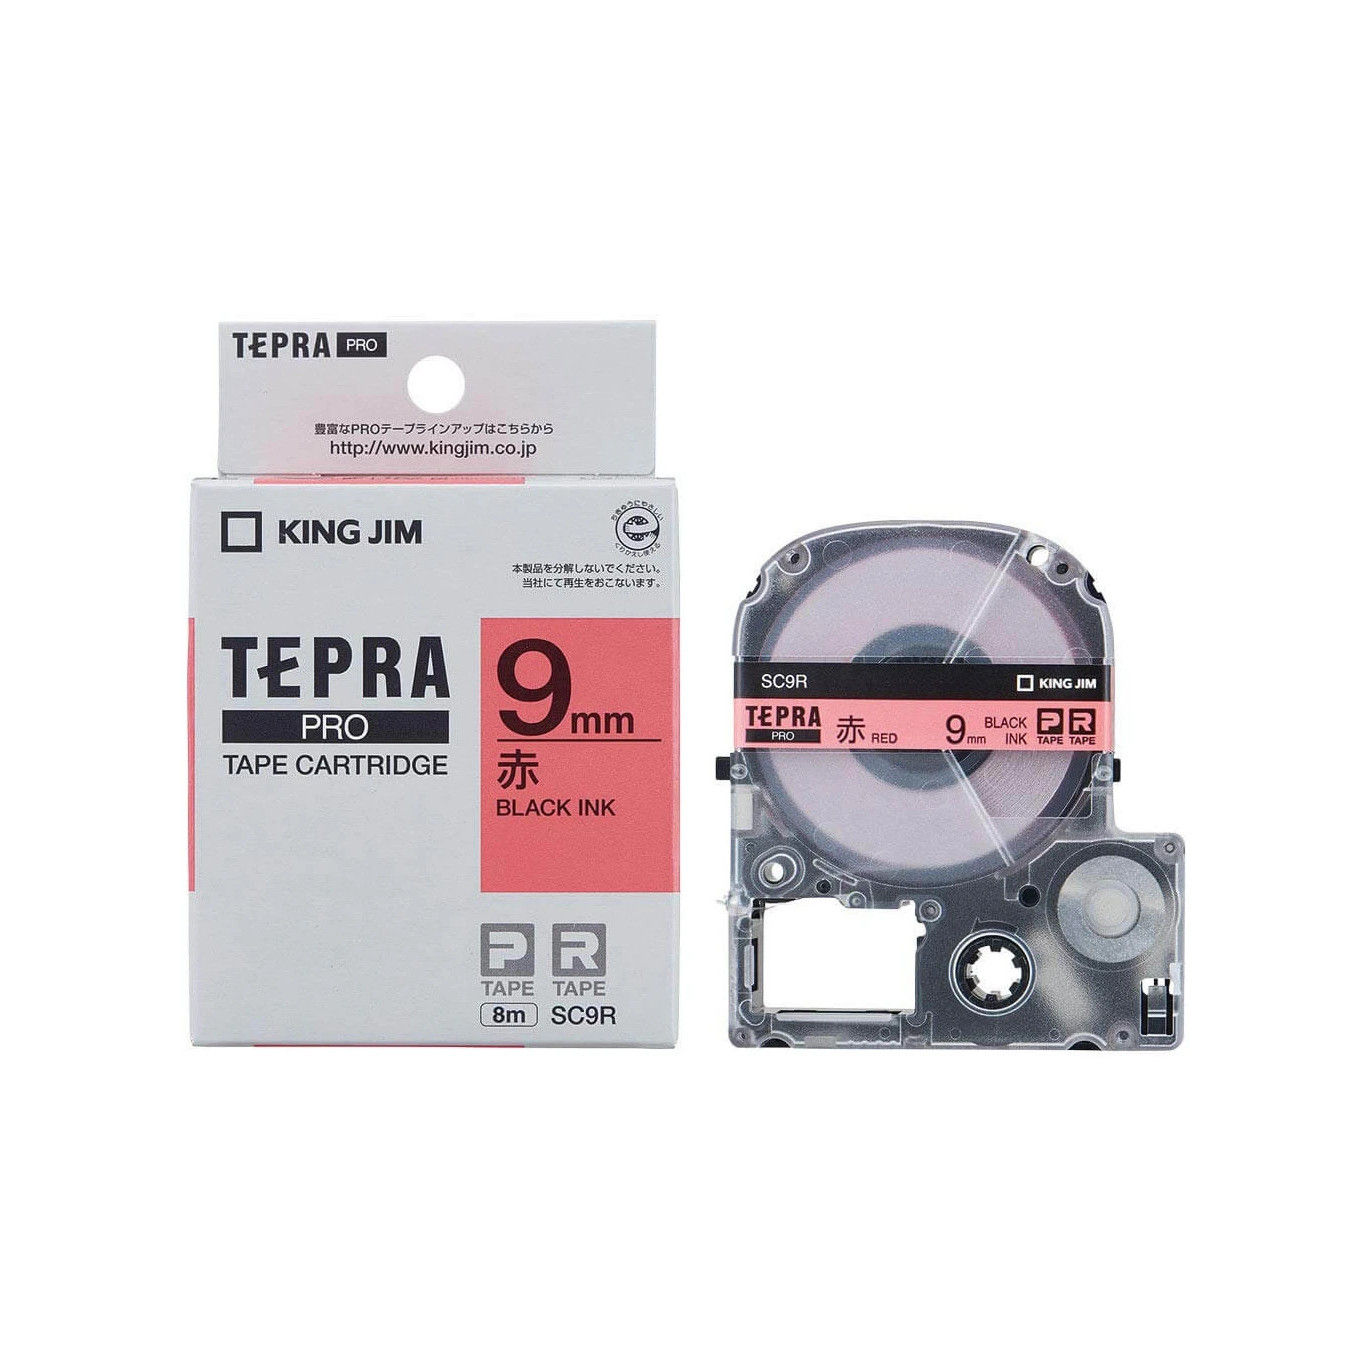 Băng mực in nhãn Tepra cỡ 9mm dùng cho máy TEPRA PRO SR-R170V / SR530 / SR970 - HÀNG CHÍNH HÃNG KING JIM